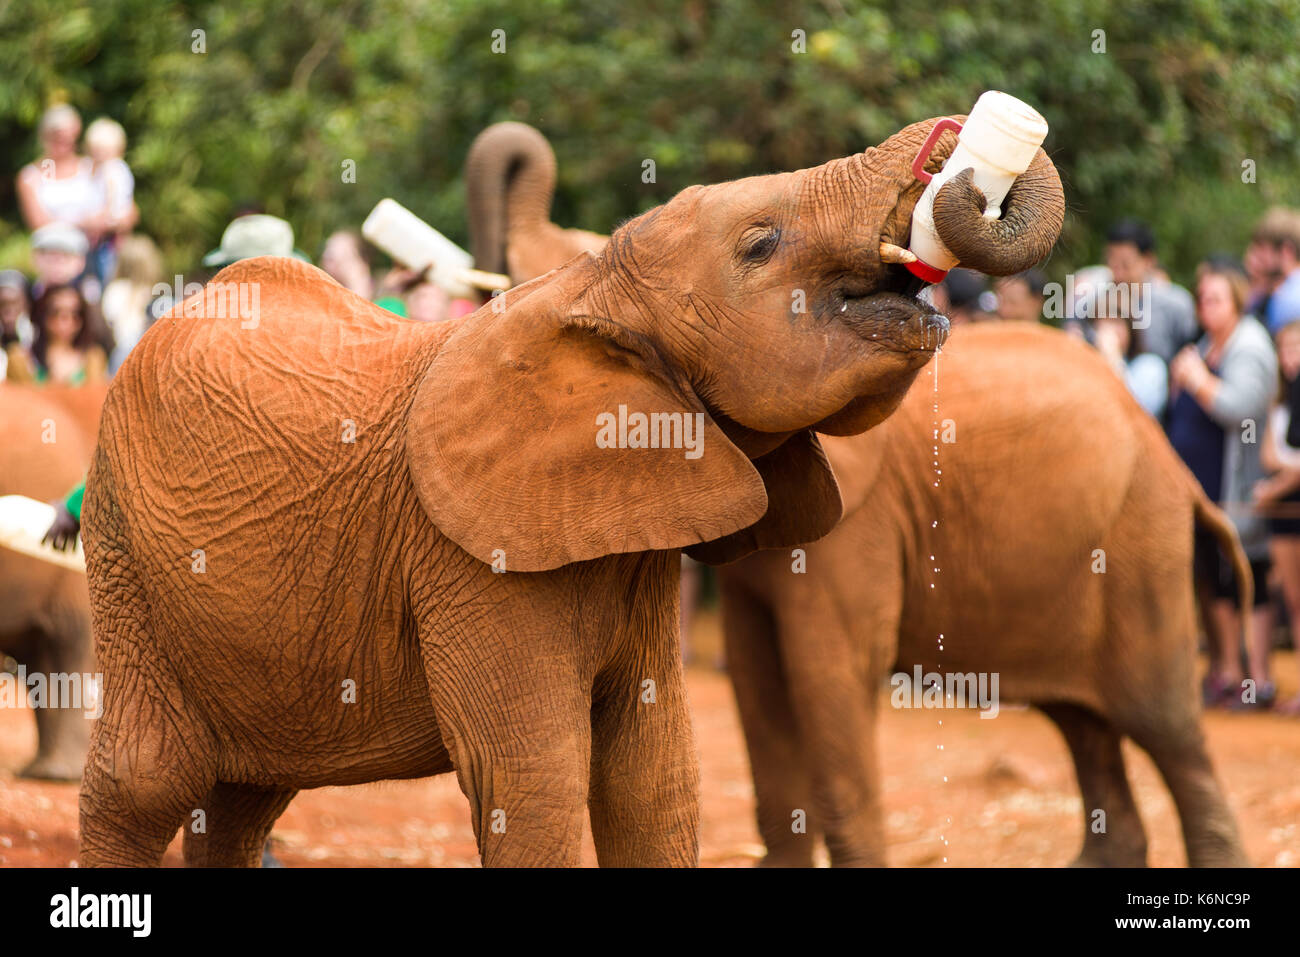 Bambini baby bush africano Elefante africano (Loxodonta africana) durante il periodo di alimentazione al David Sheldrick's l'Orfanotrofio degli Elefanti, Nairobi, Kenia Foto Stock